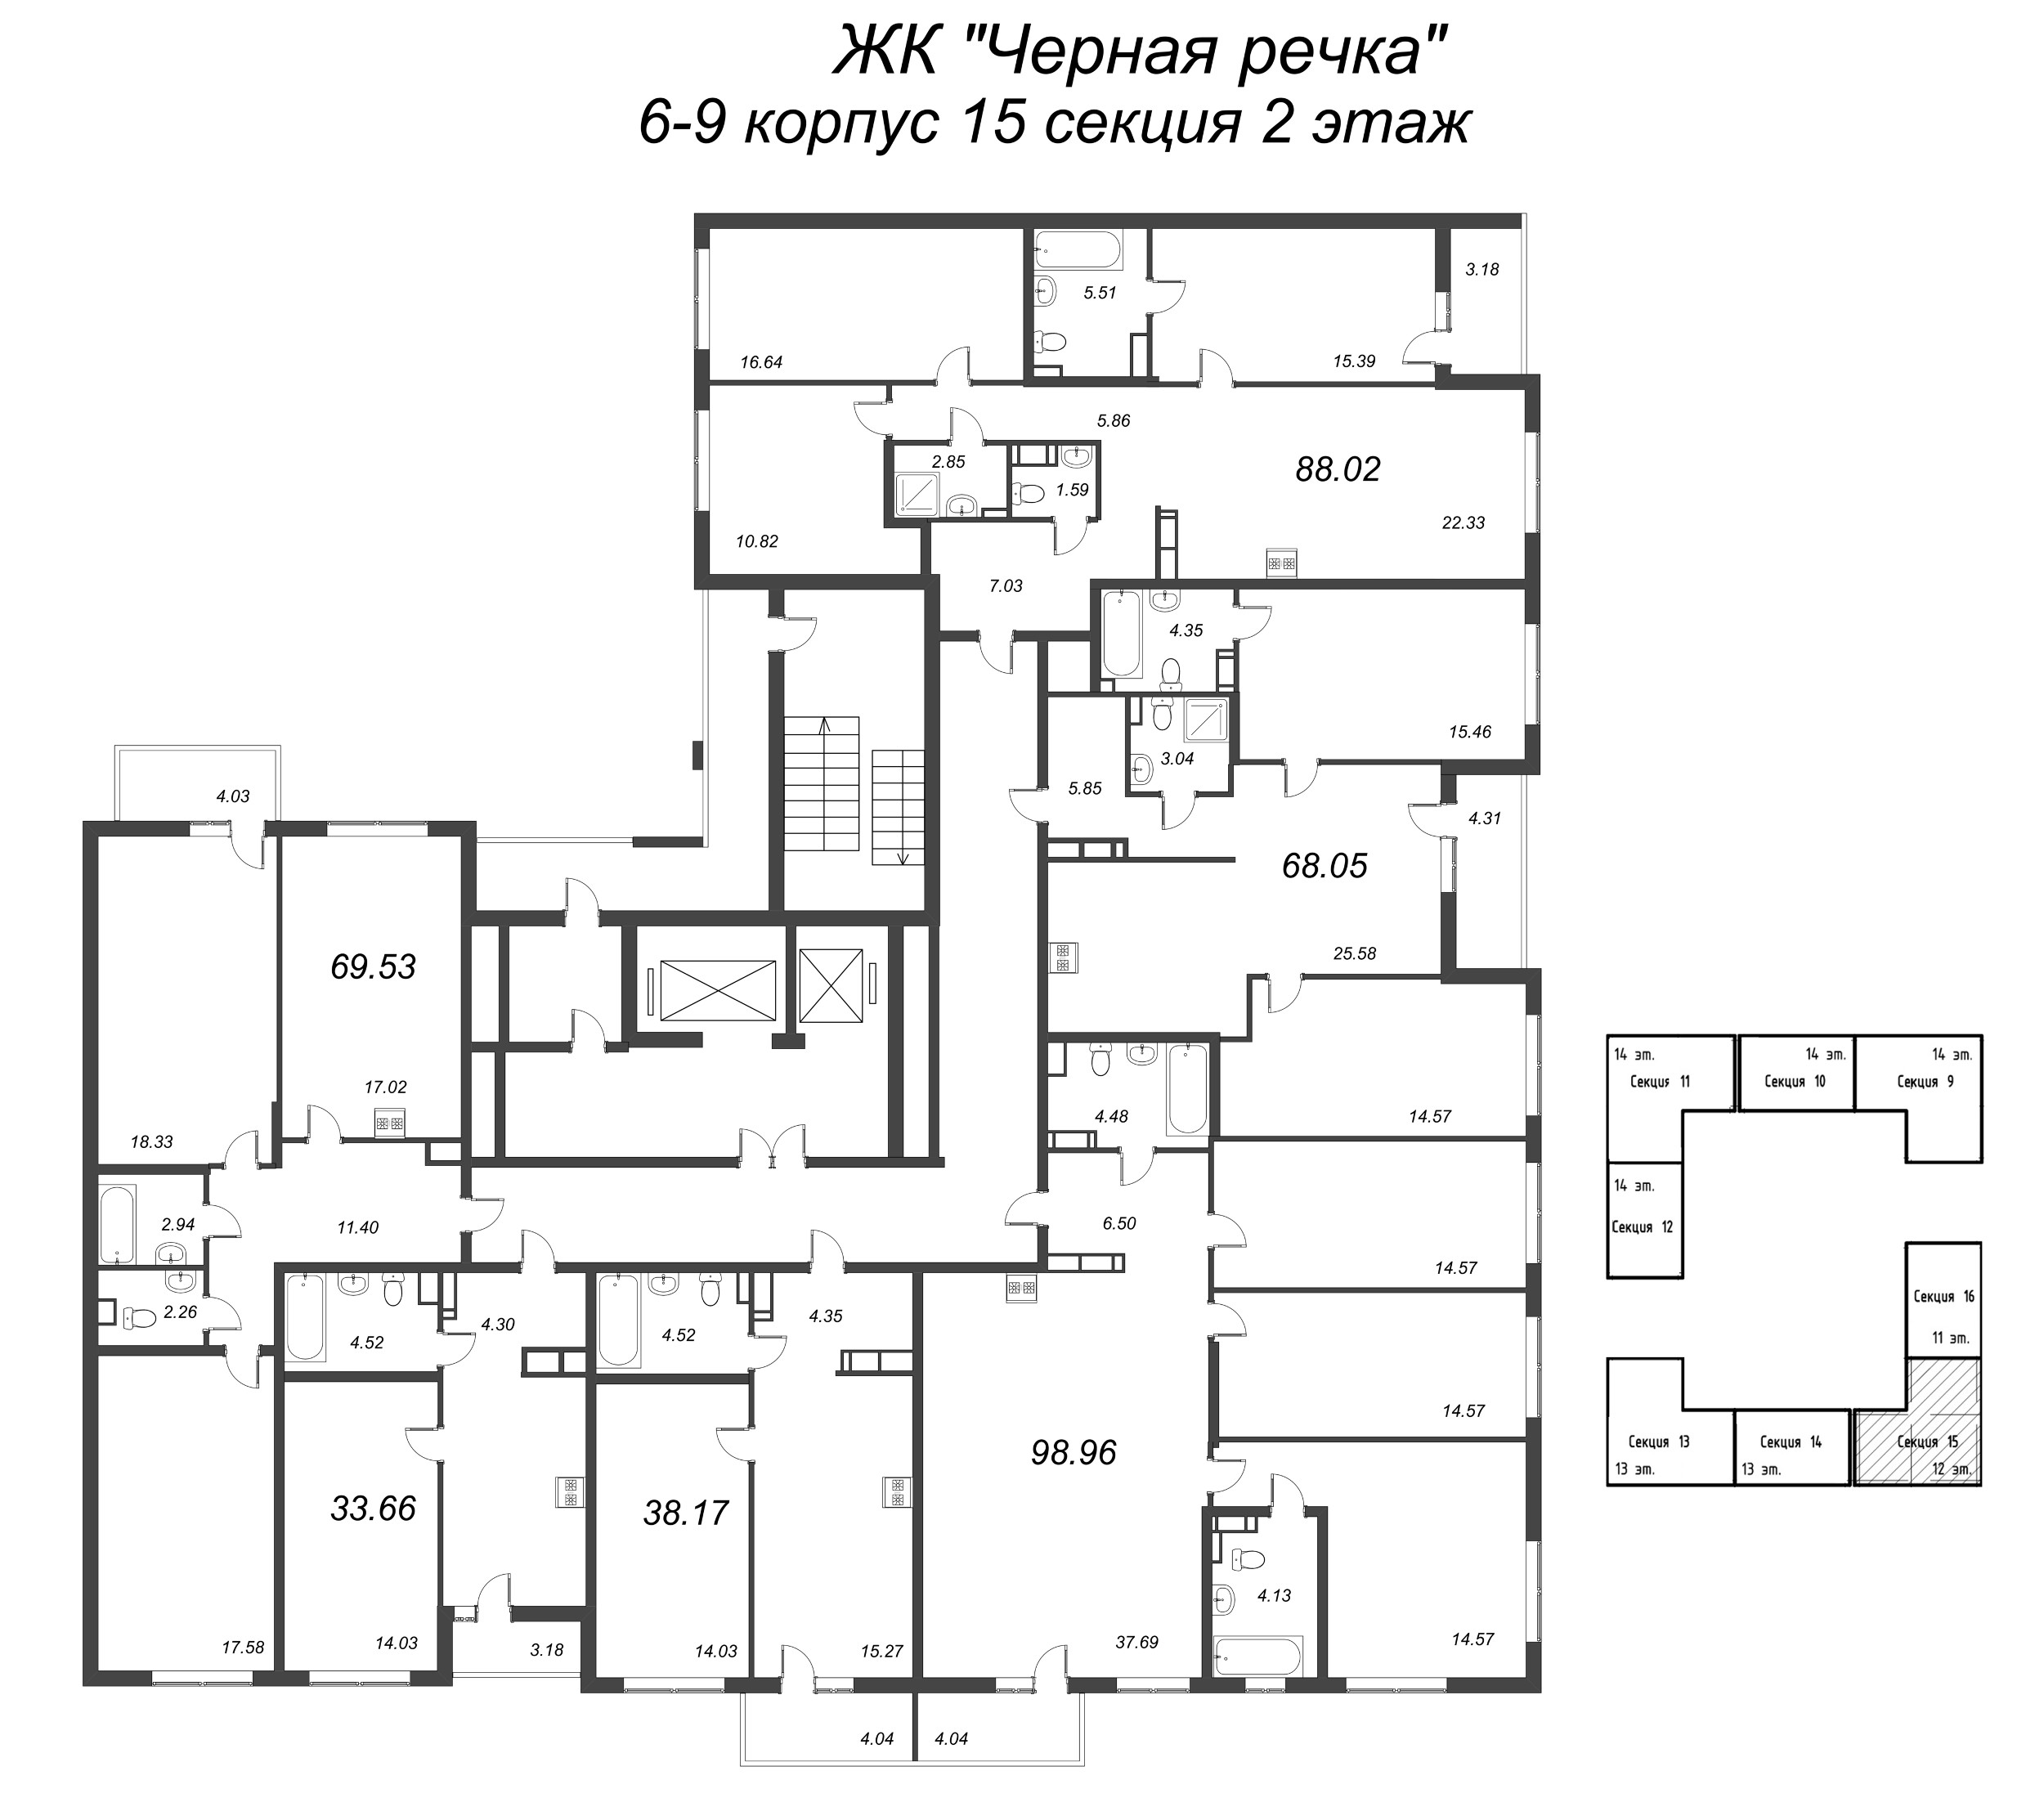 2-комнатная (Евро) квартира, 38.17 м² в ЖК "Чёрная речка" - планировка этажа